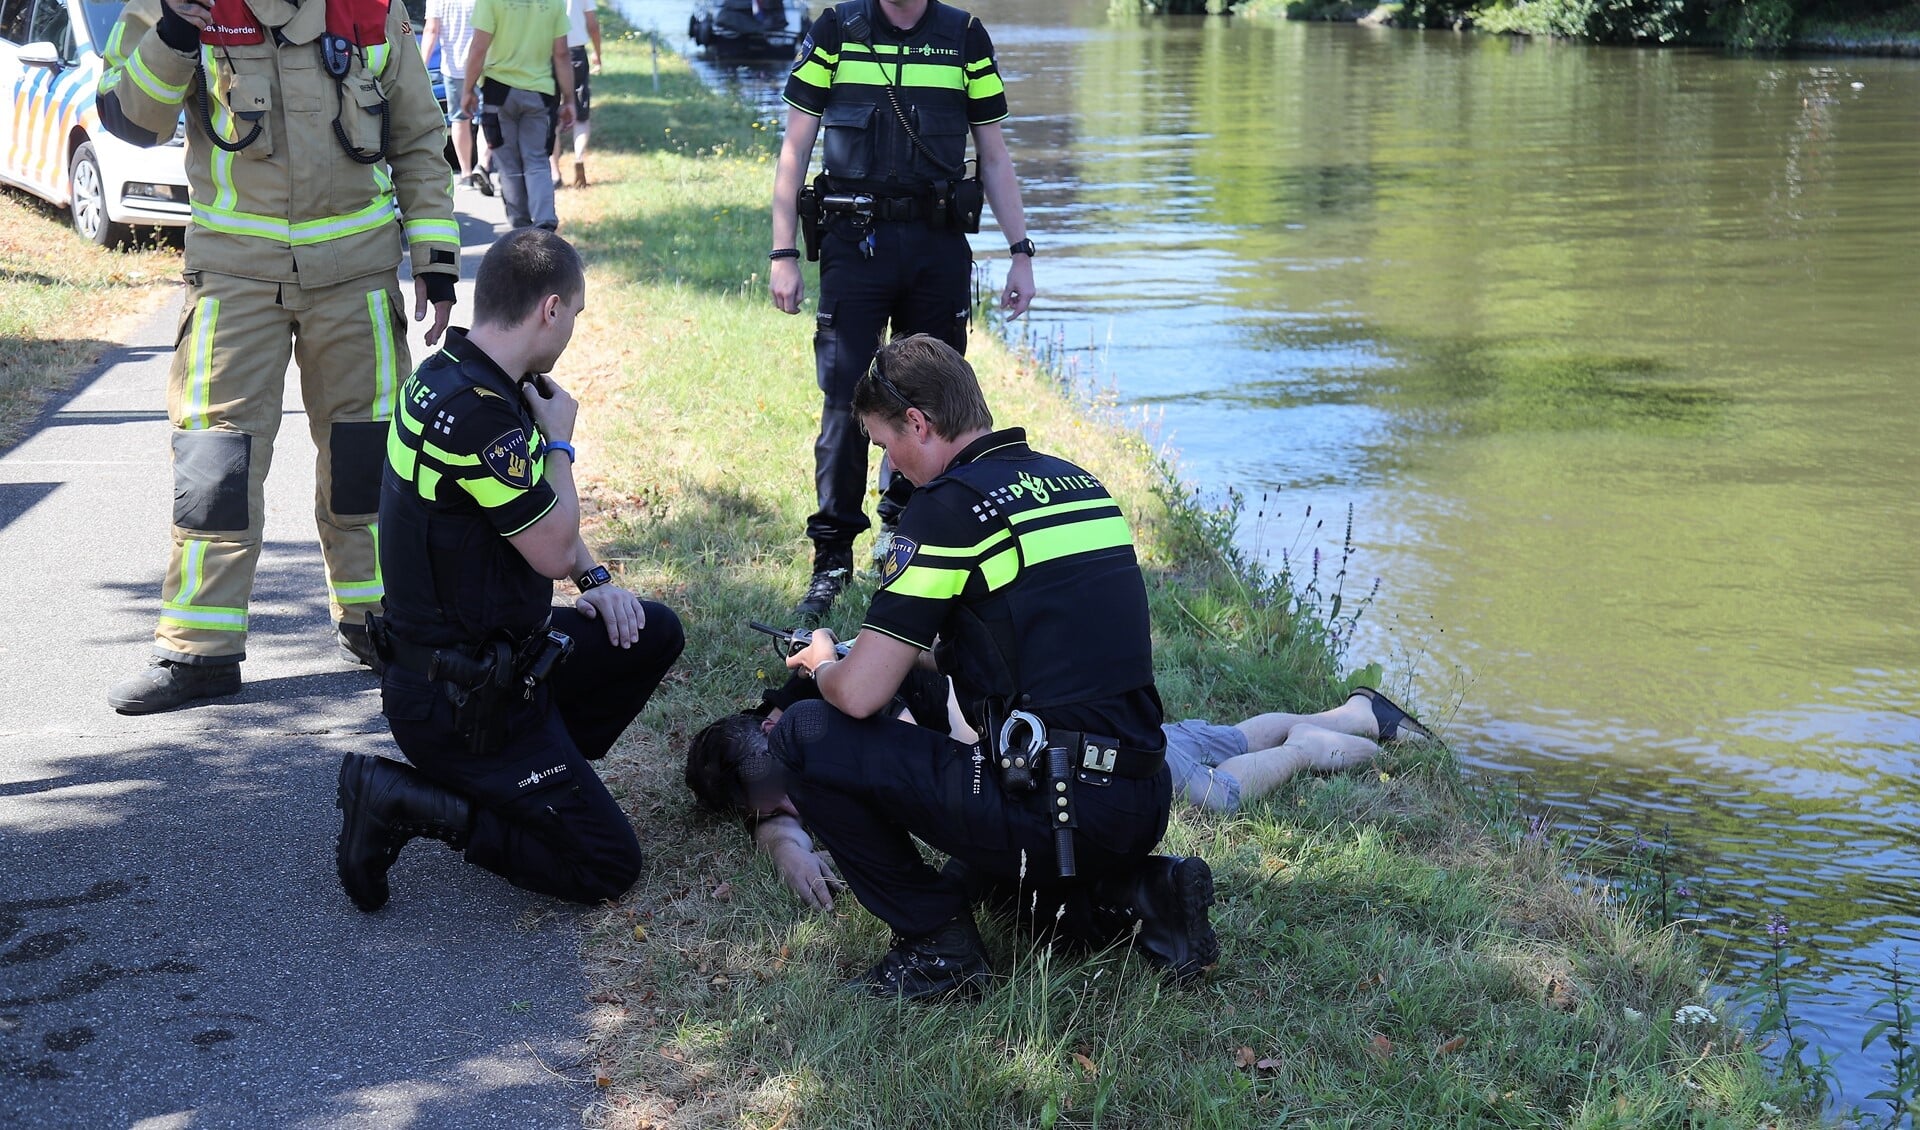 Politiemensen bekommeren zich om het slachtoffer (foto: Rene Hendriks/Regio15).